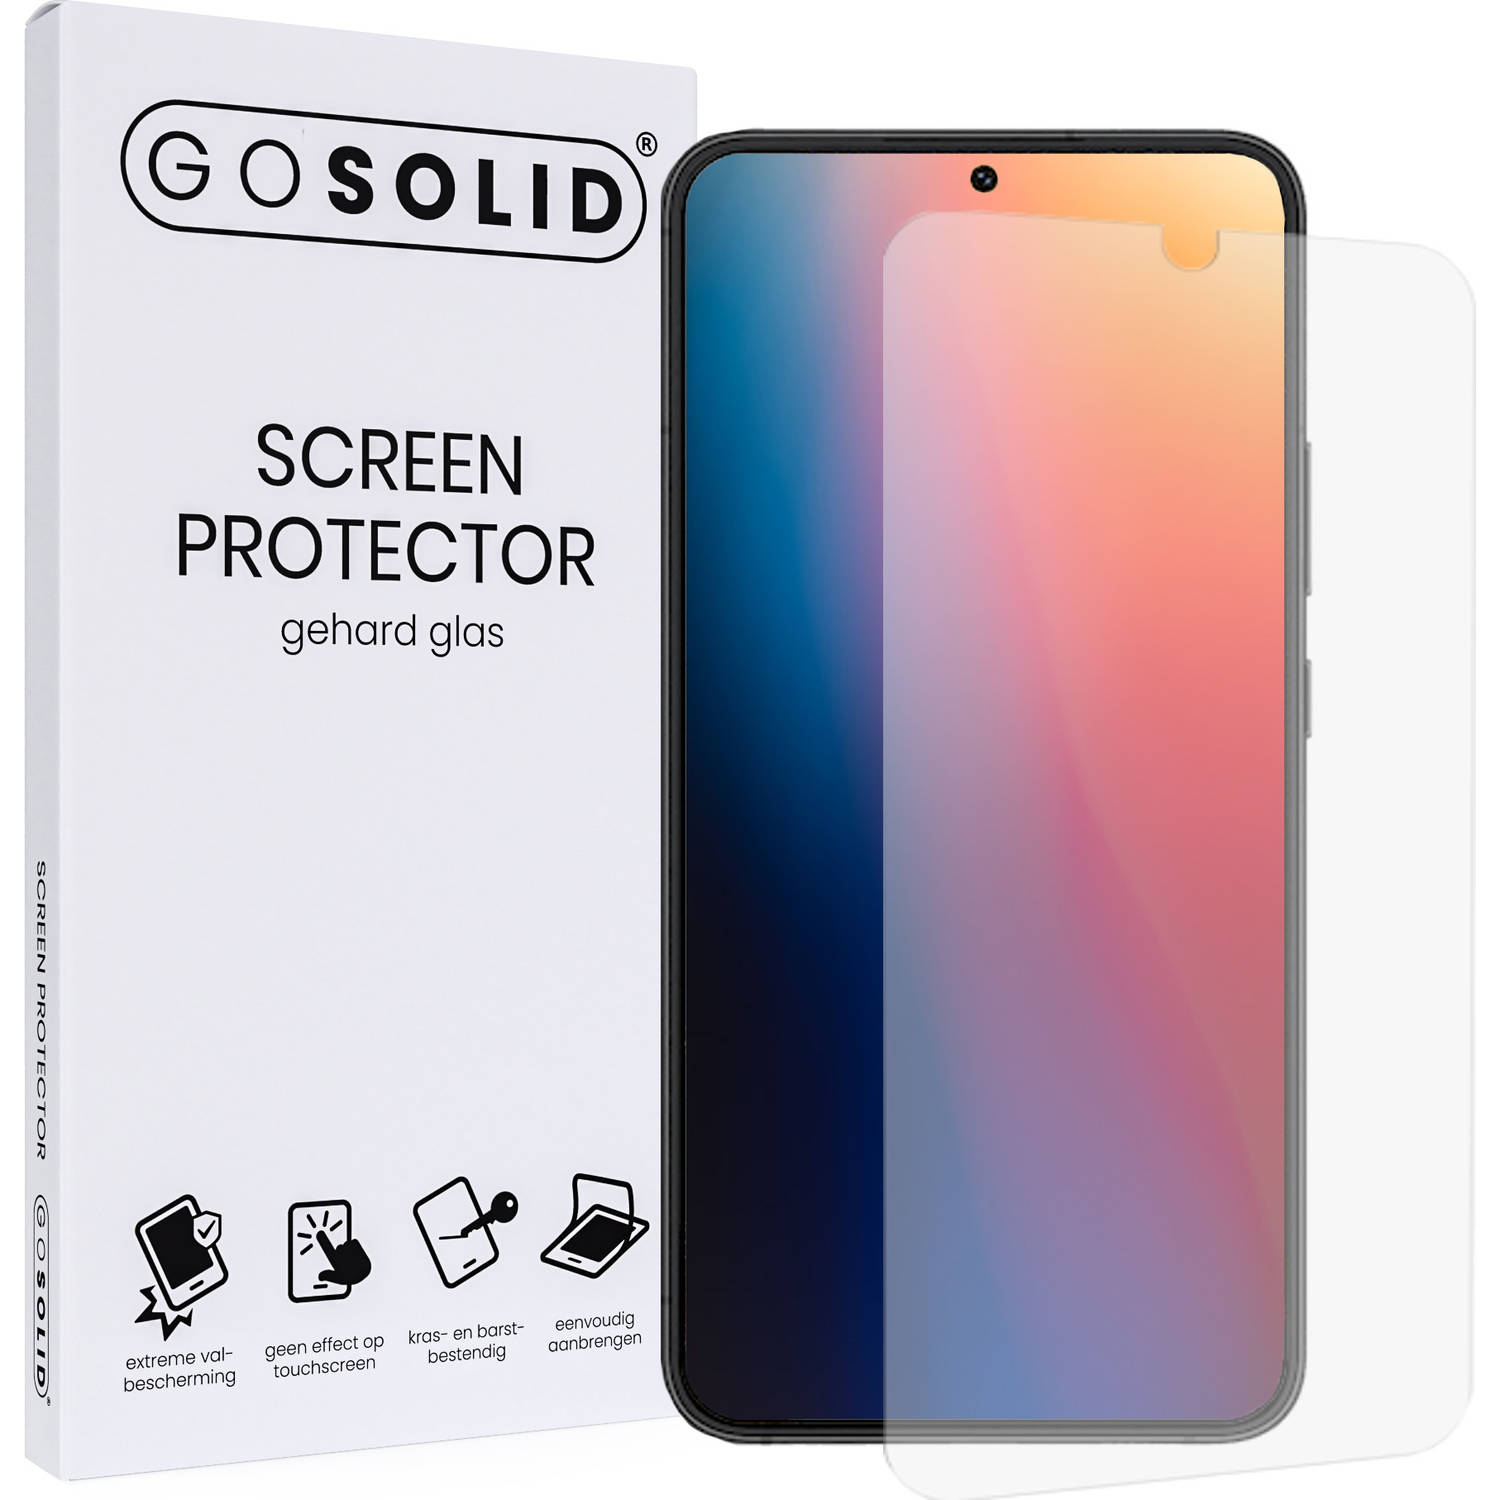 GO SOLID! Screenprotector voor Oppo Reno 8 Pro gehard glas